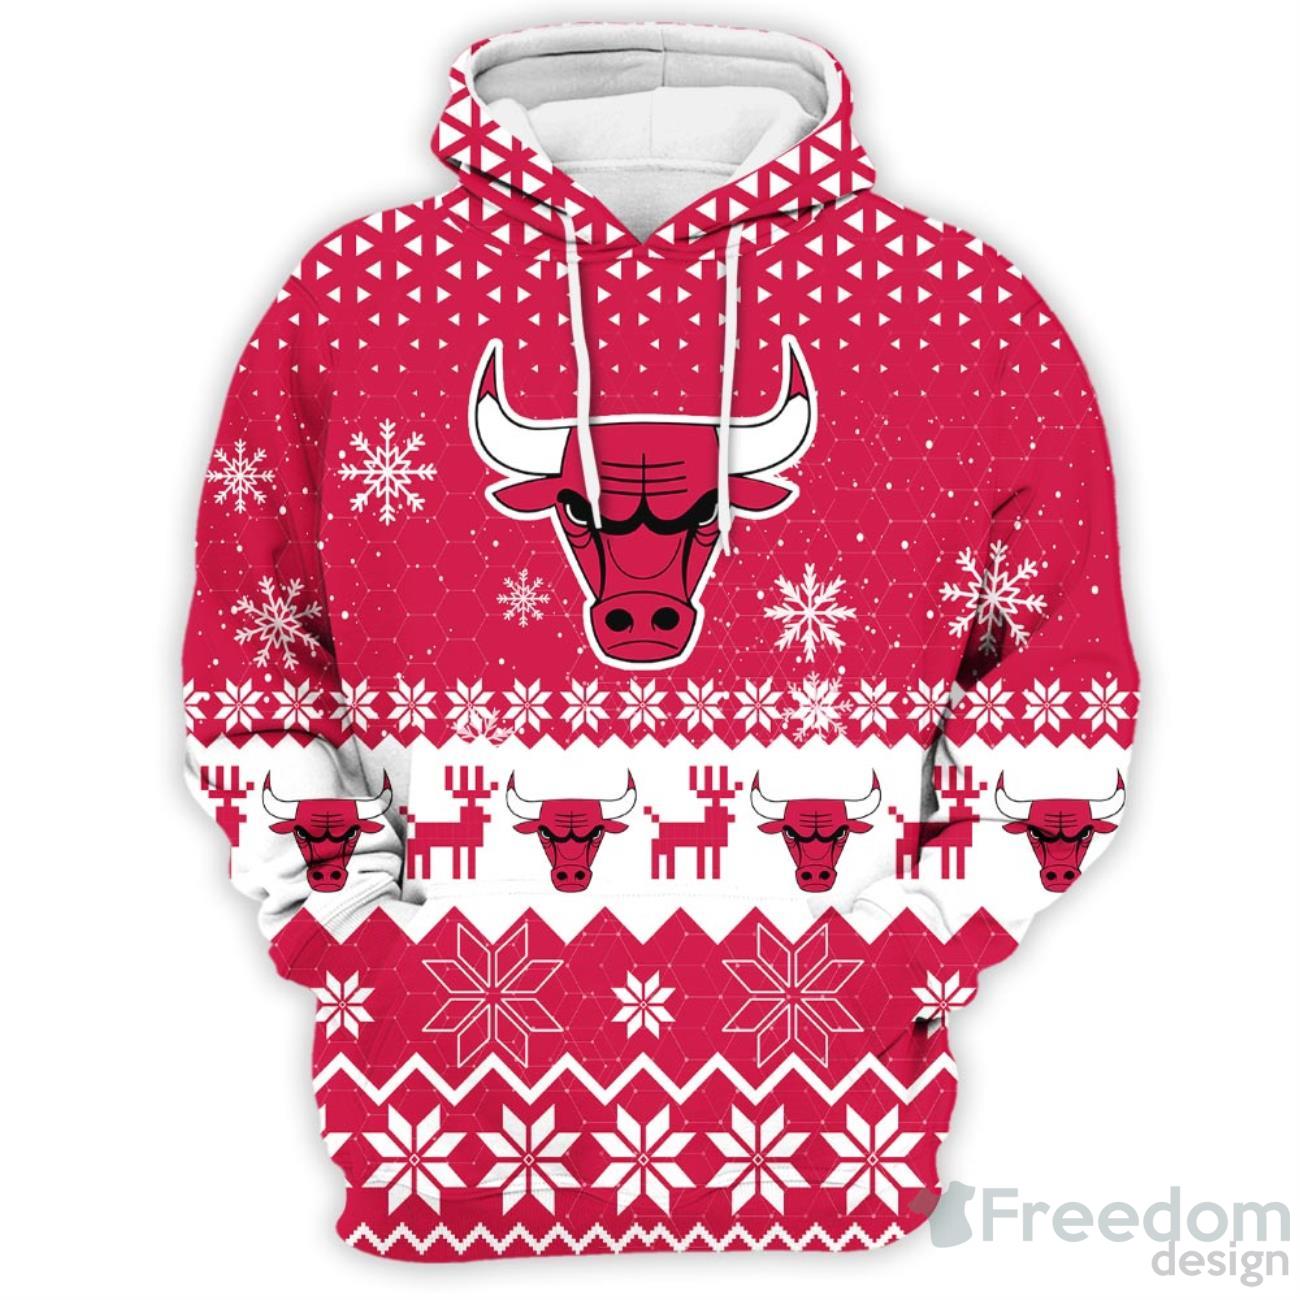 Chicago Bulls Hoodie 3D cheap basketball Sweatshirt for fans -Jack sport  shop